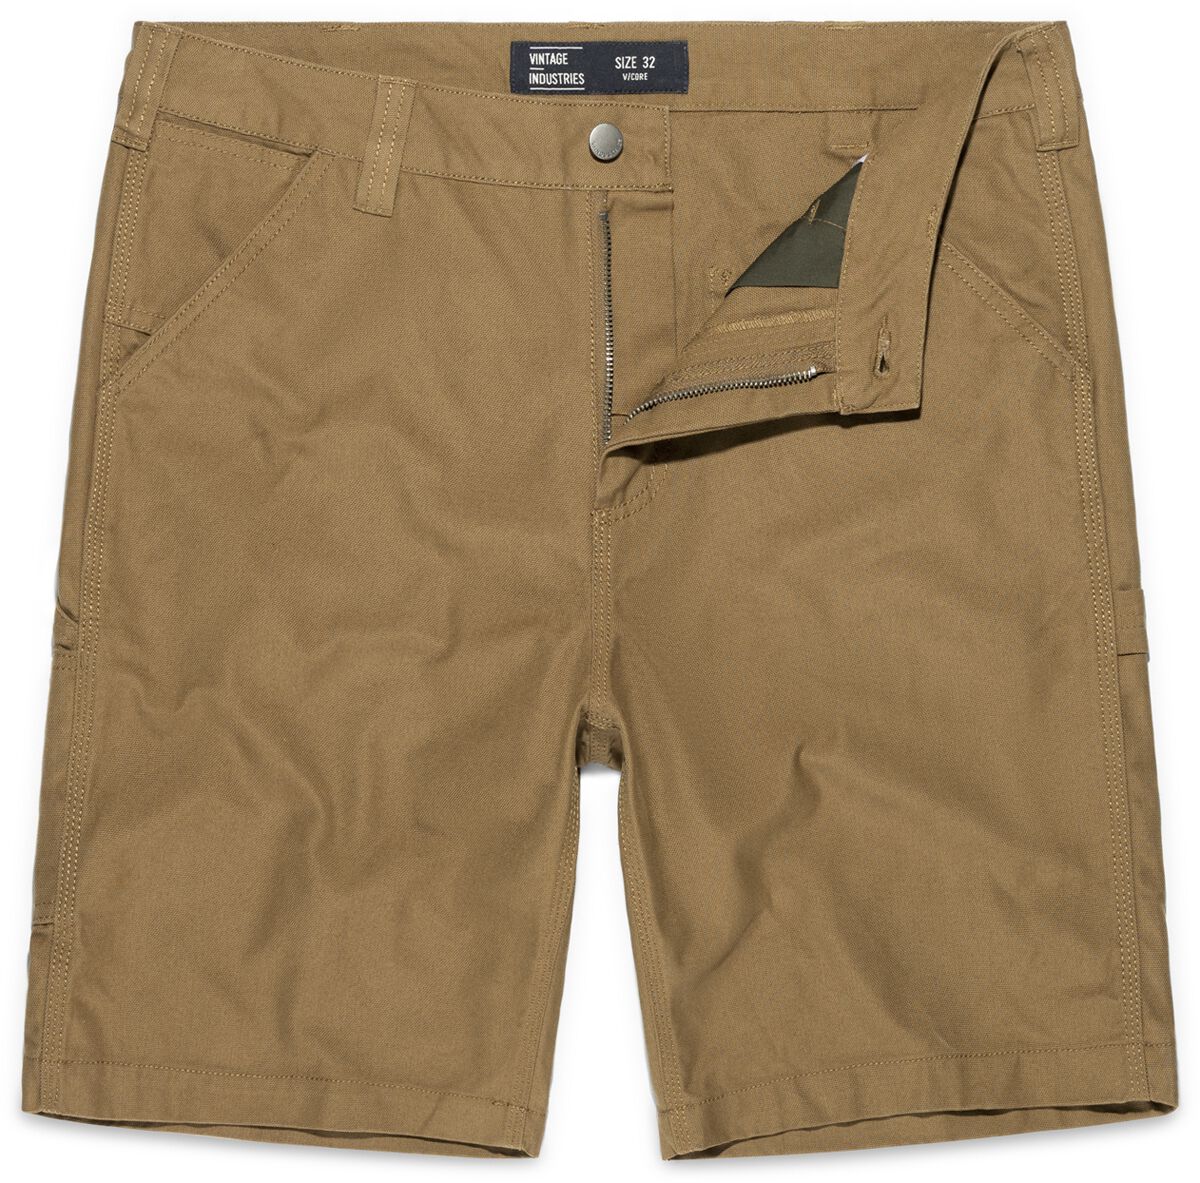 Vintage Industries Dayton Shorts Short beige in 36